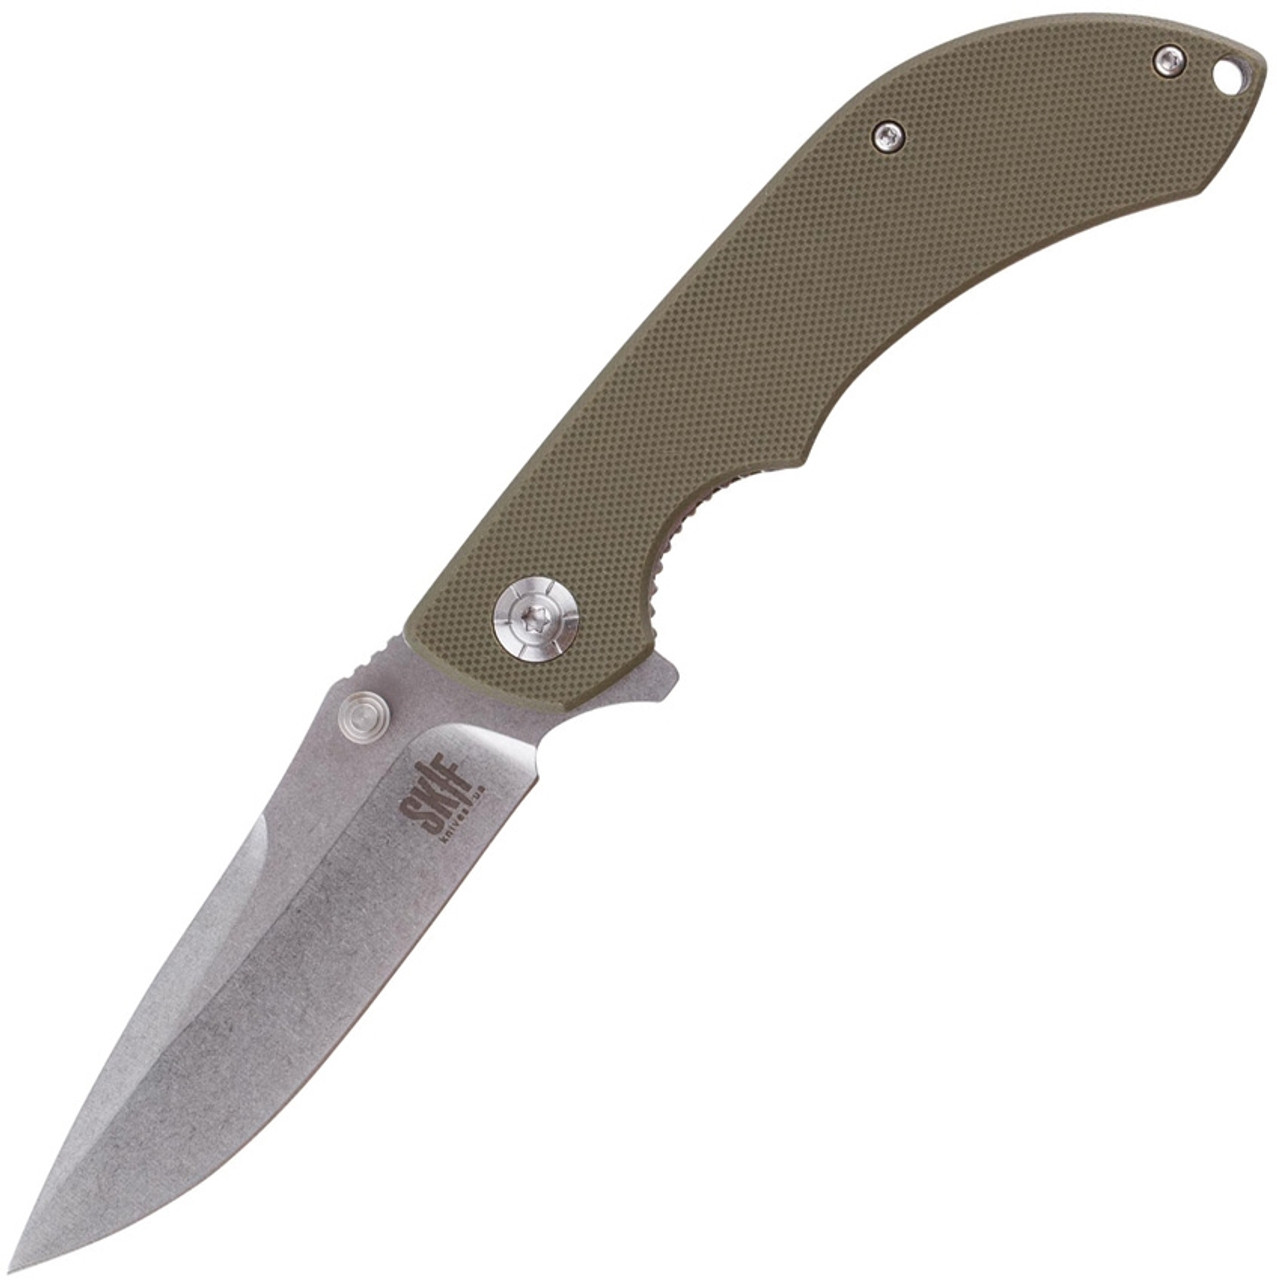 Skif Knives Spyke (IS-0011OG) 3.5" Stonewash 8Cr12MoV Drop Point Plain Blade, Olive Drab G-10 Handle